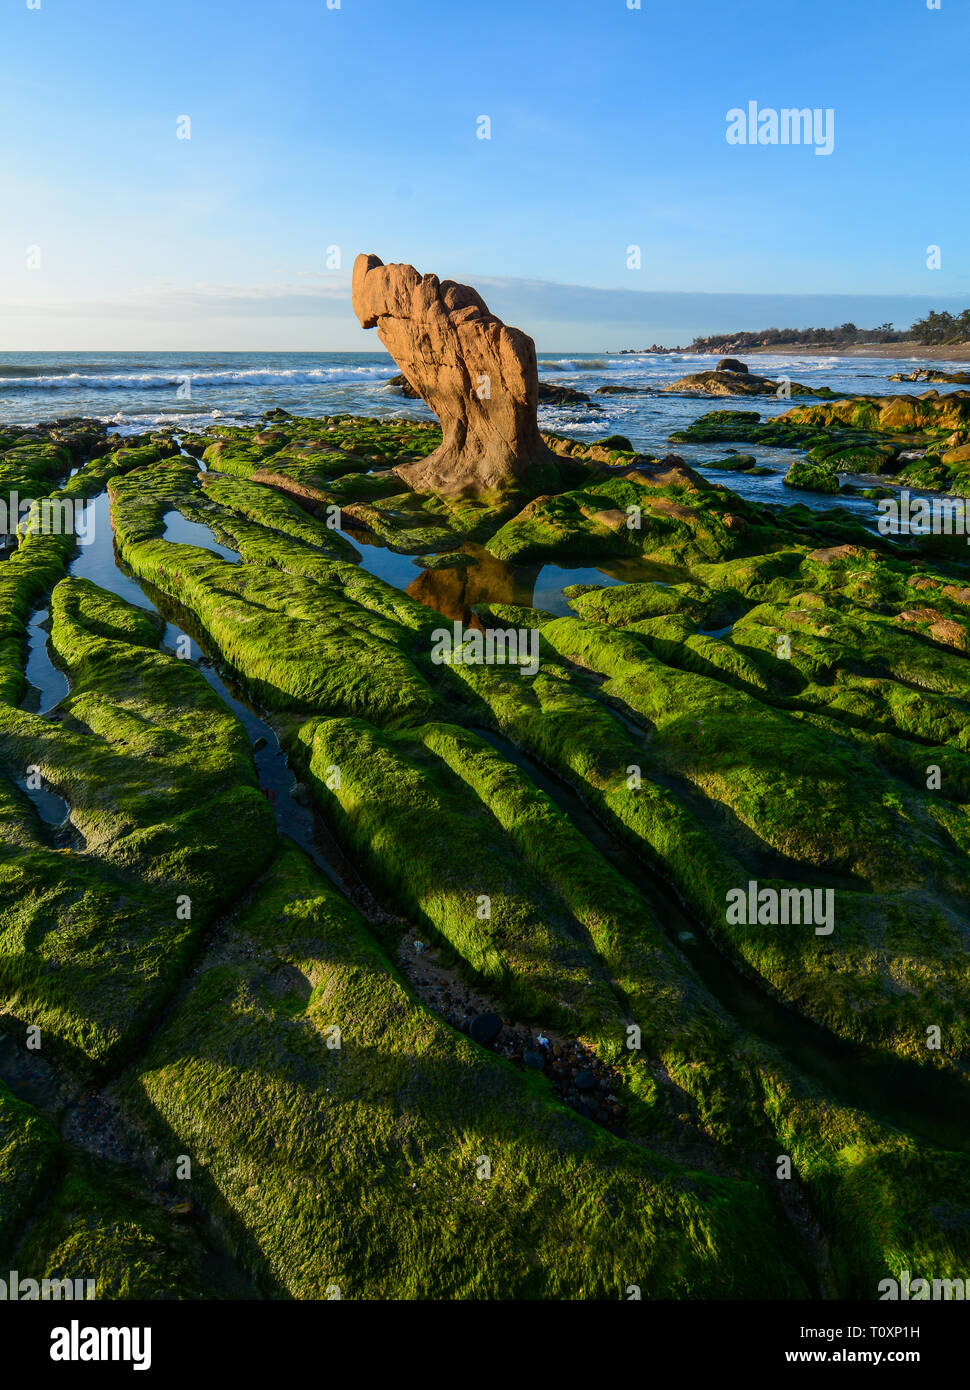 Grüne Algen auf einem Felsen in der Mitte des Meeres. South China Sea in Vietnam. Stockfoto